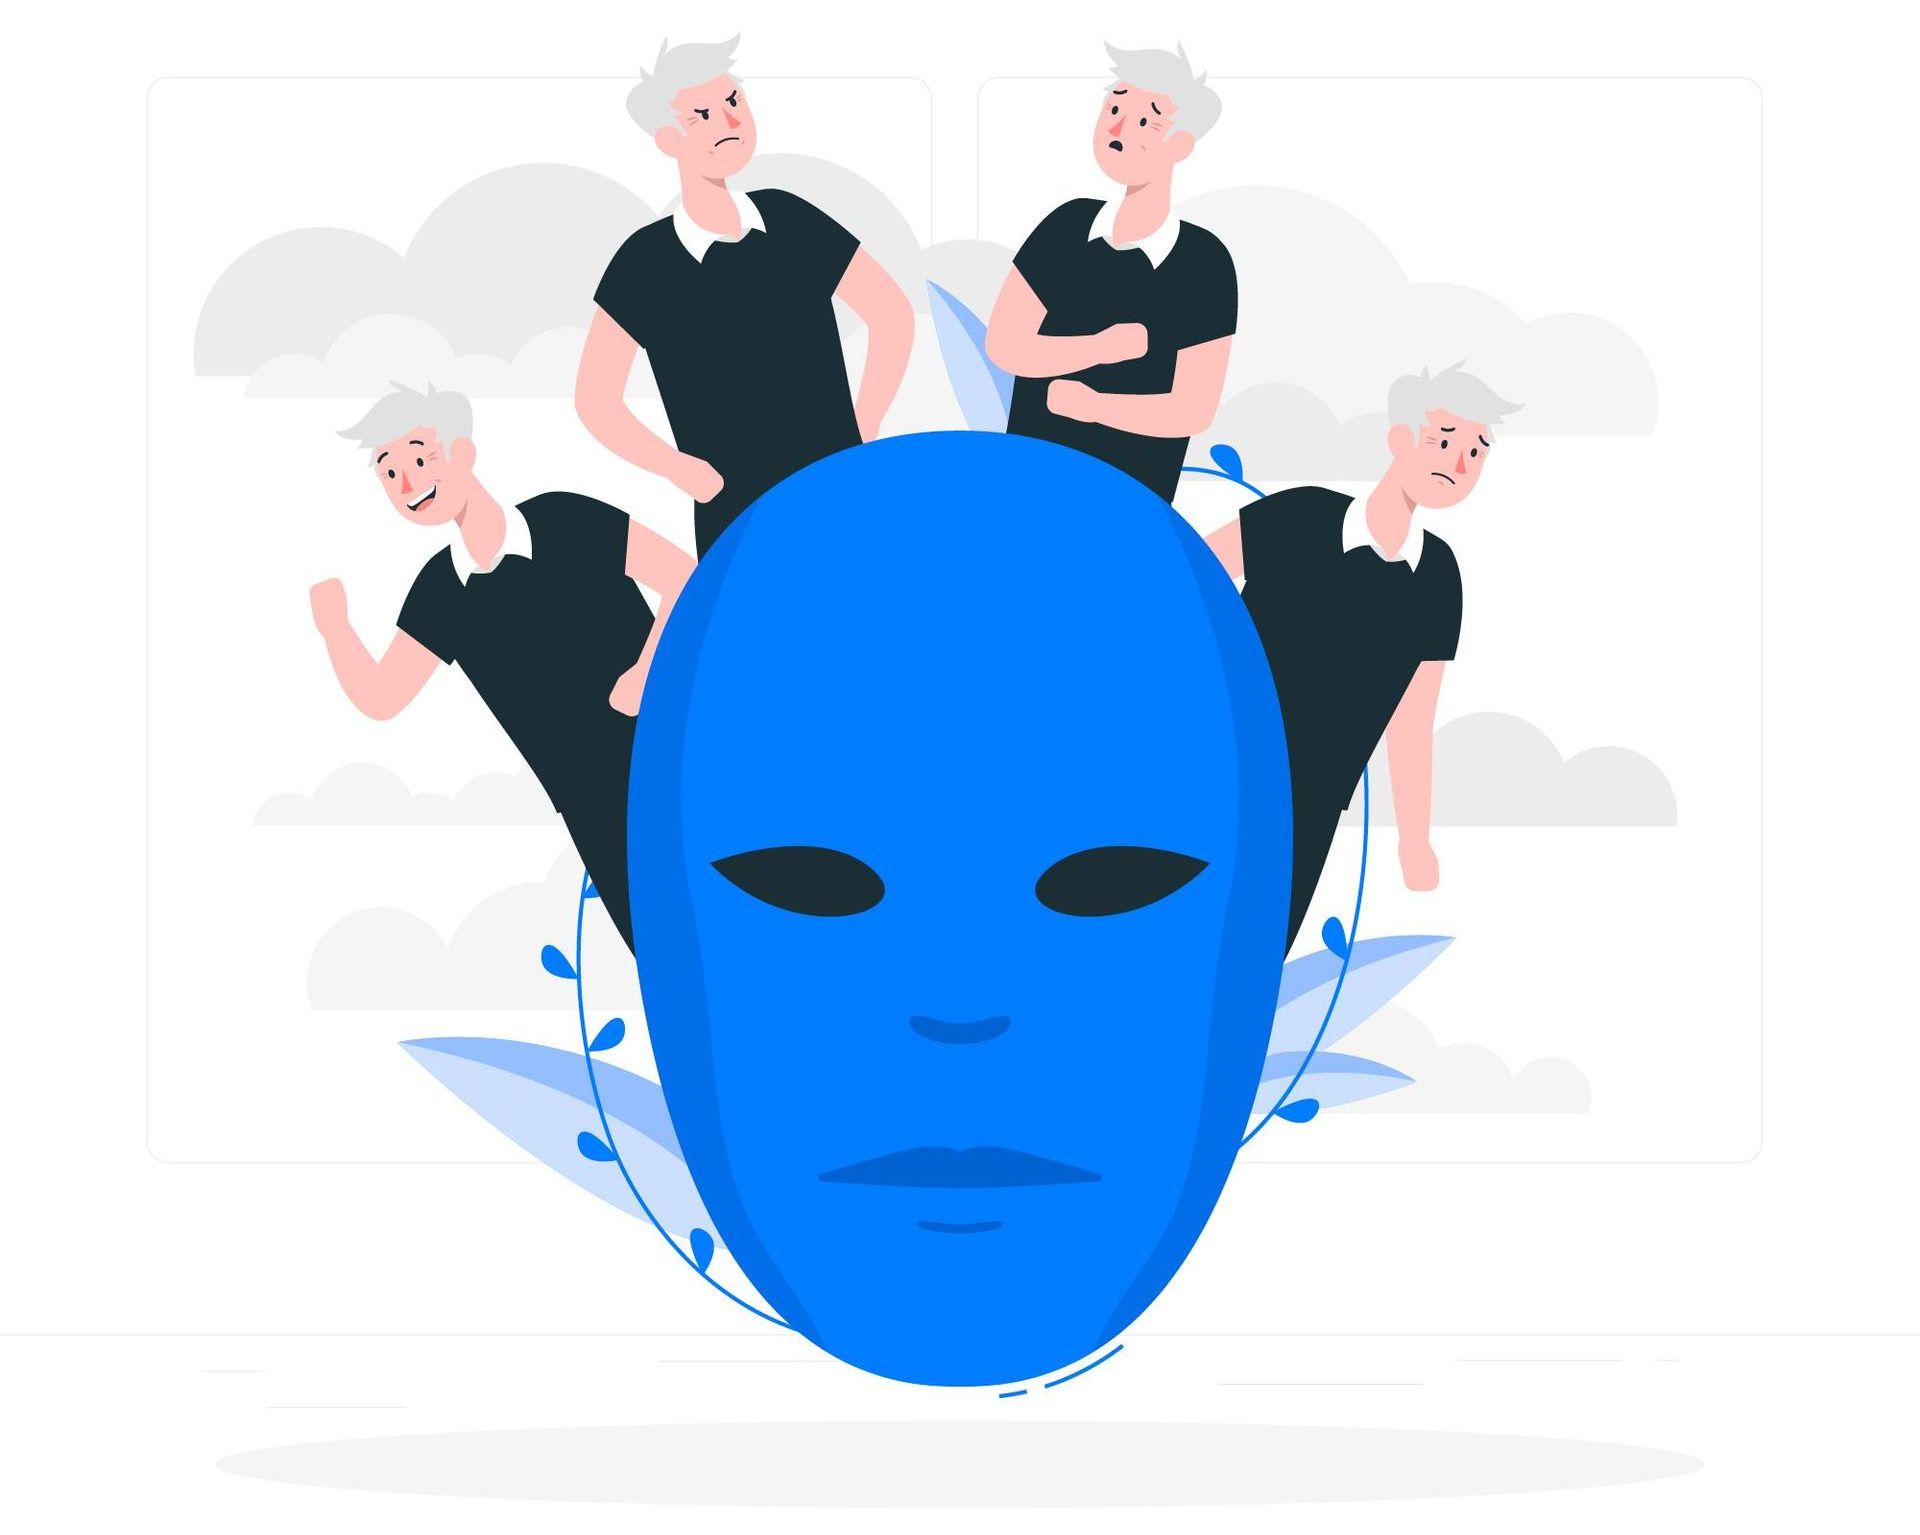 Imagem contendo várias pessoas atrás de uma máscara de cor azul